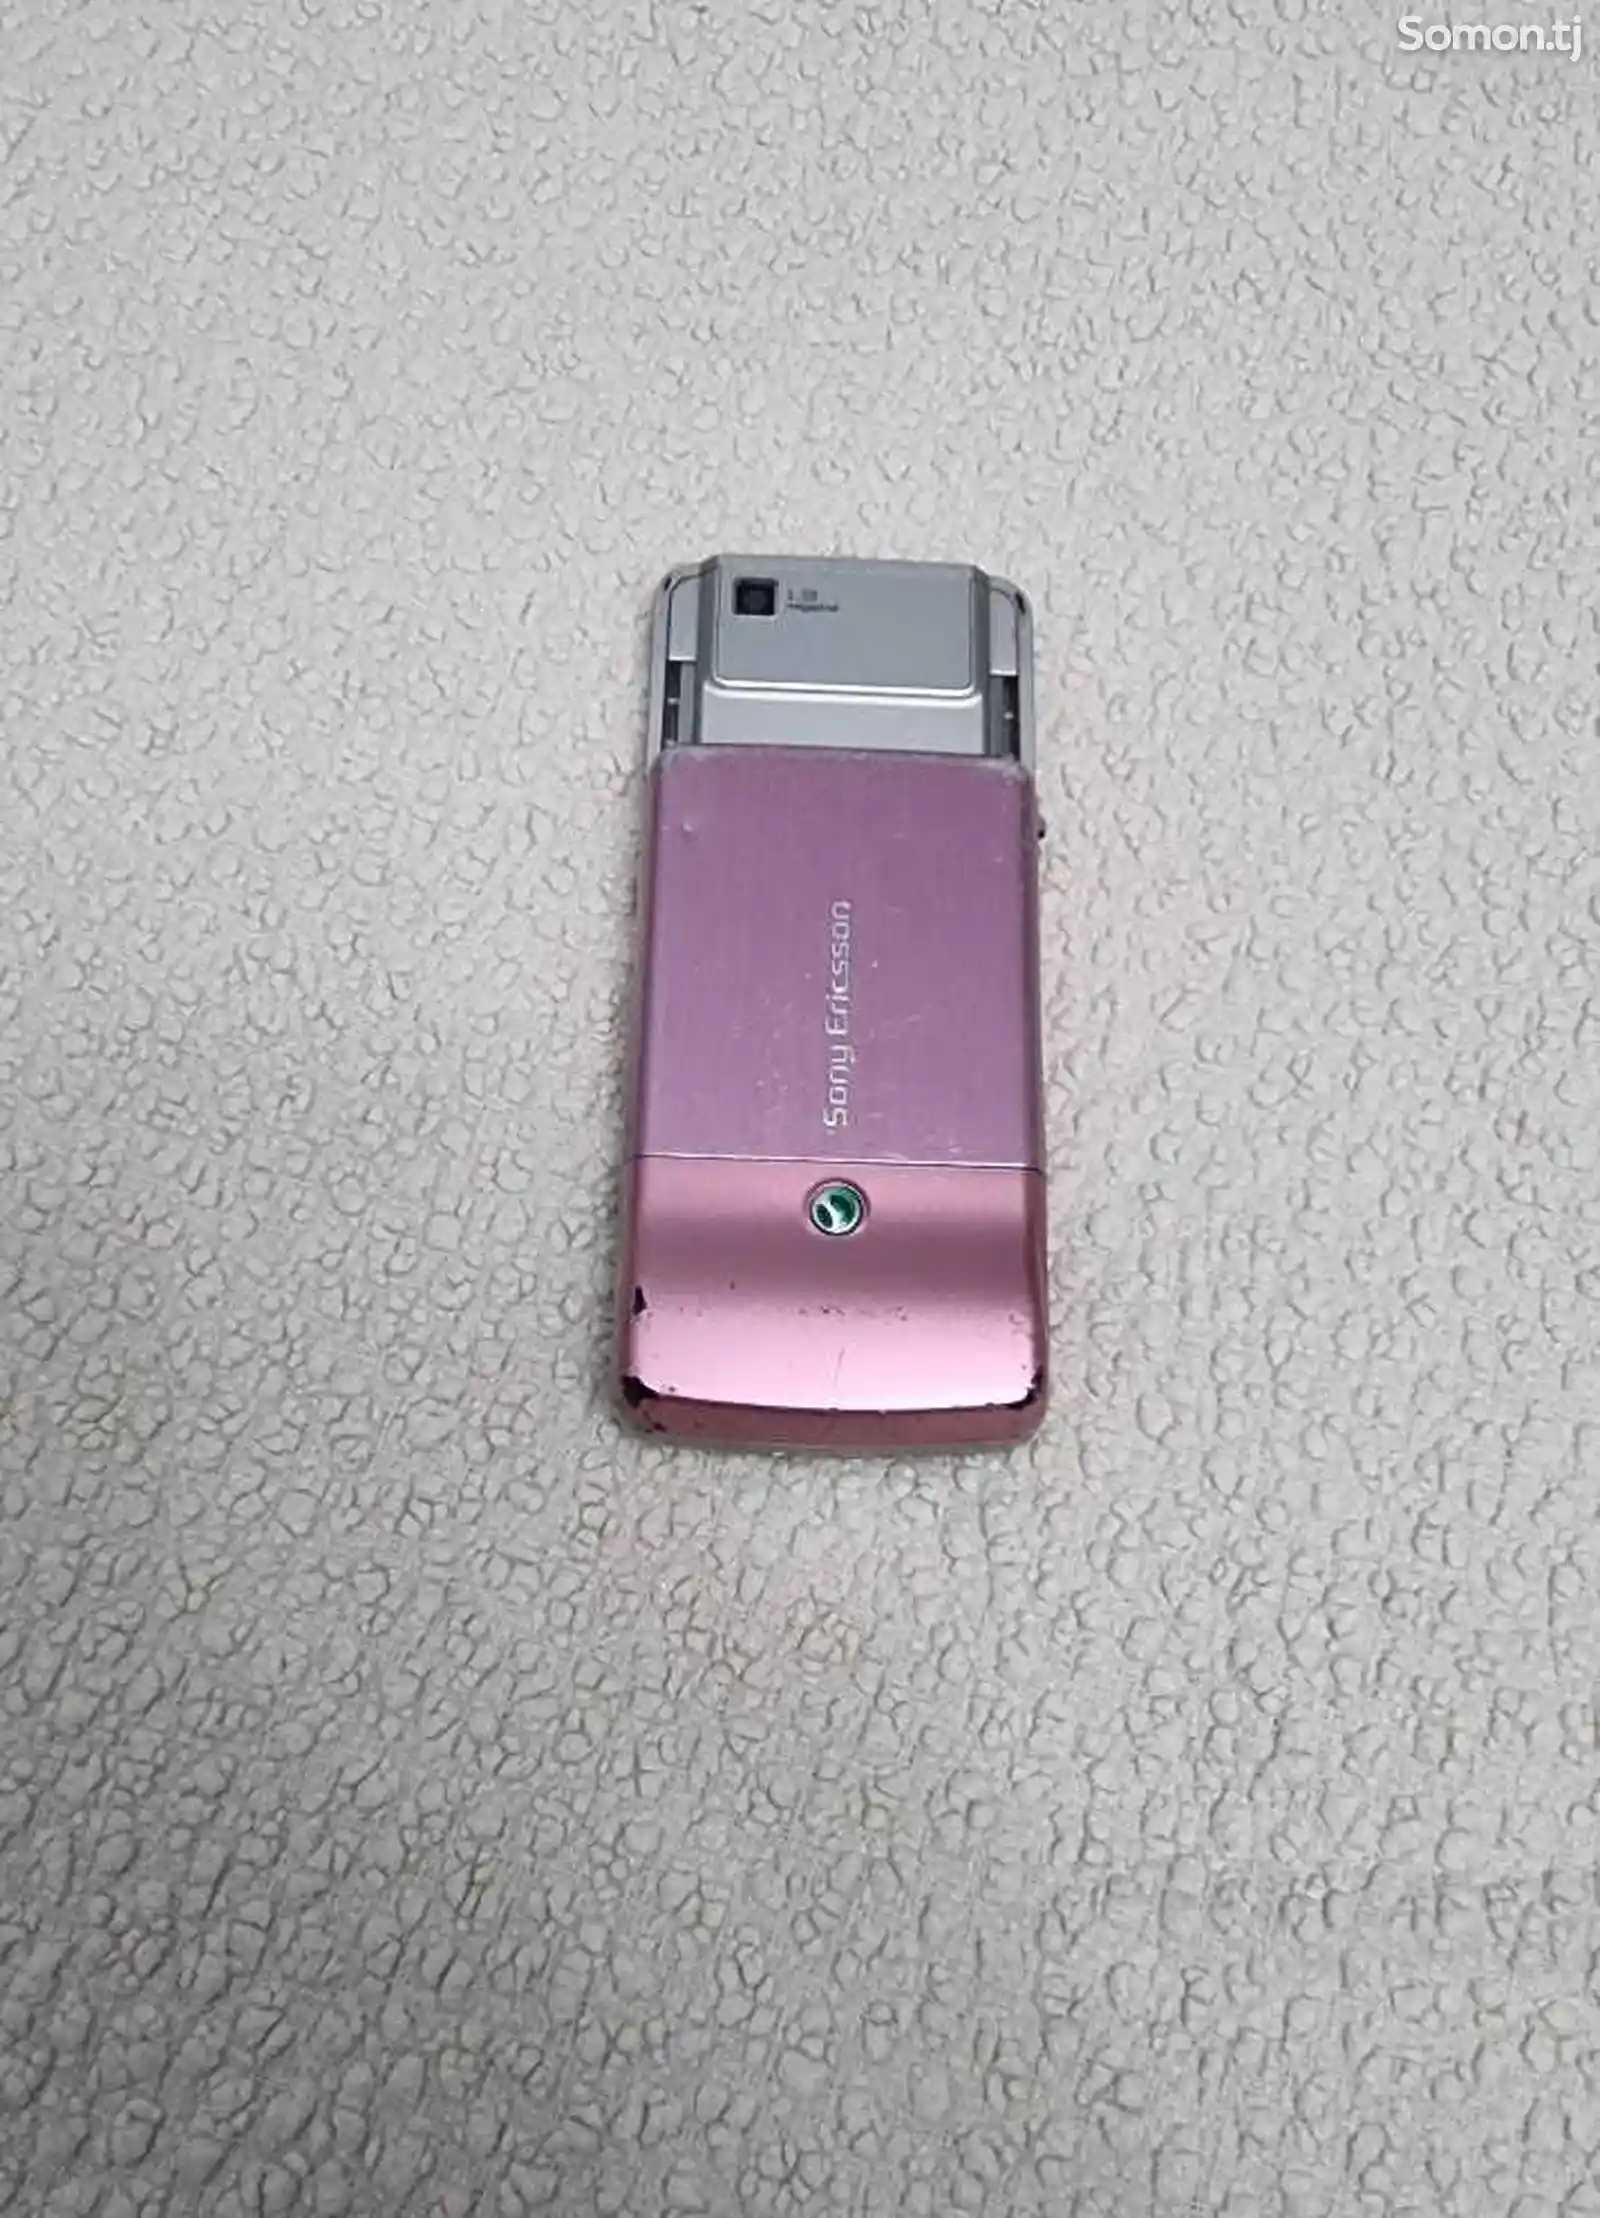 Sony Ericsson T303-3